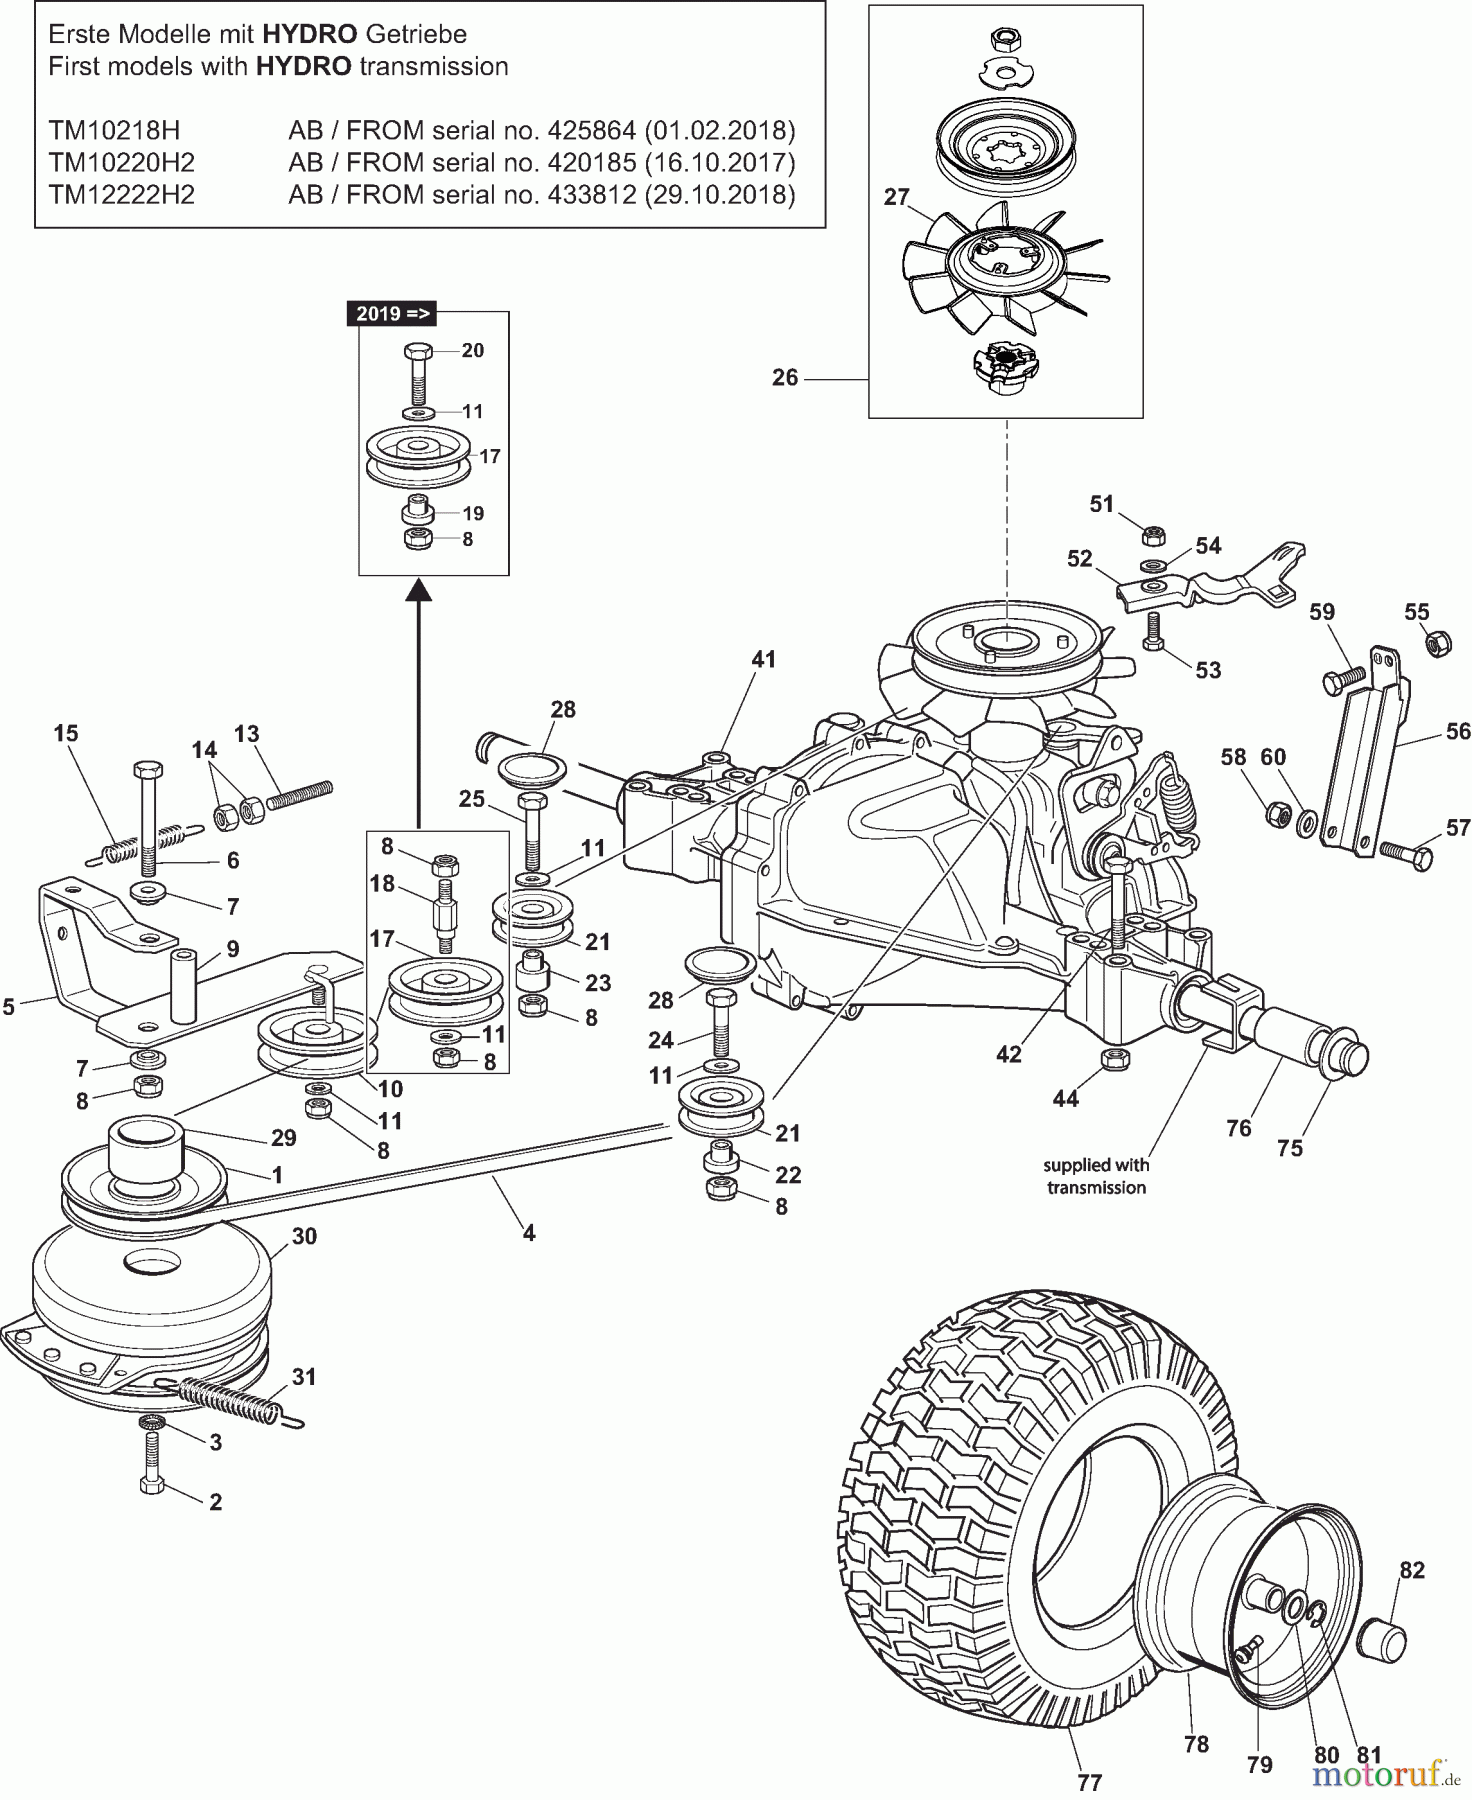  Dolmar Rasentraktoren TM10220H2 TM10220H2 (2015-2019) 6ya  Getriebe HYDRO